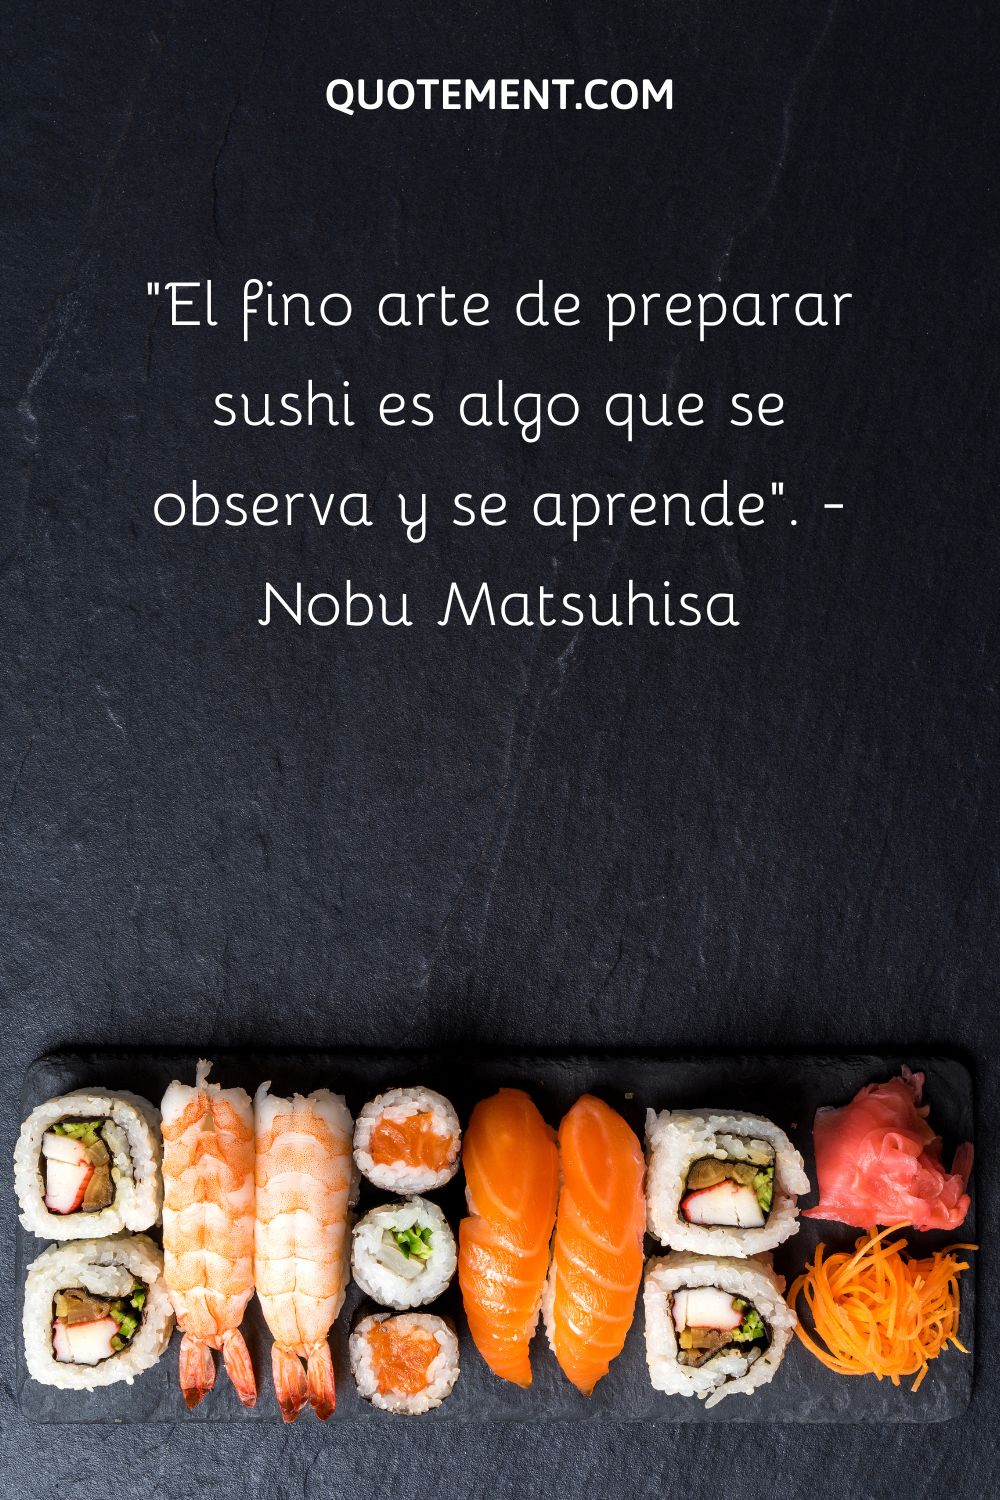 El fino arte de preparar sushi es algo que se observa y se aprende.